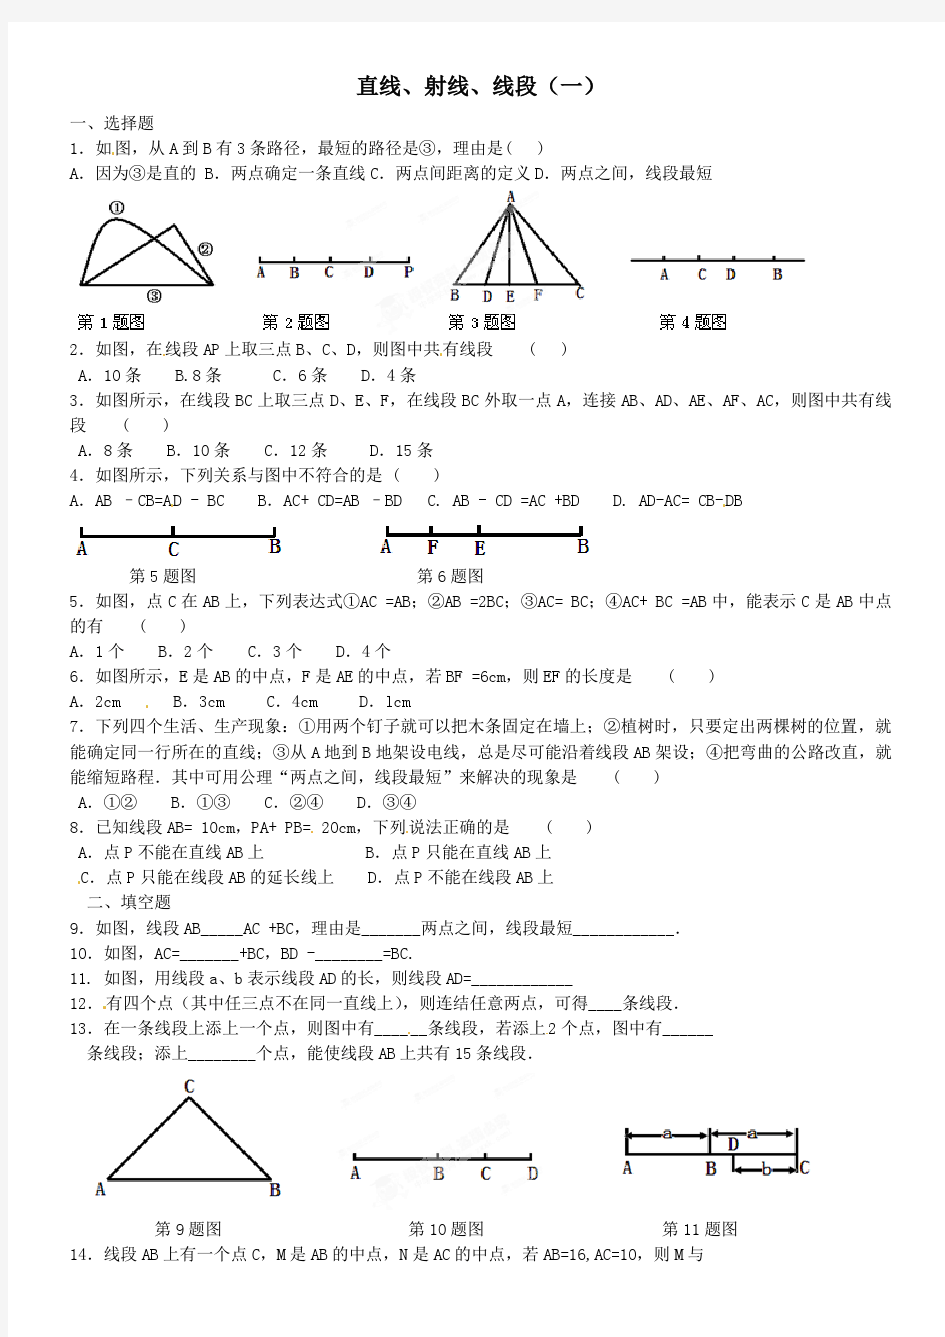 《几何图形初步》直线、射线、线段(一)练习题